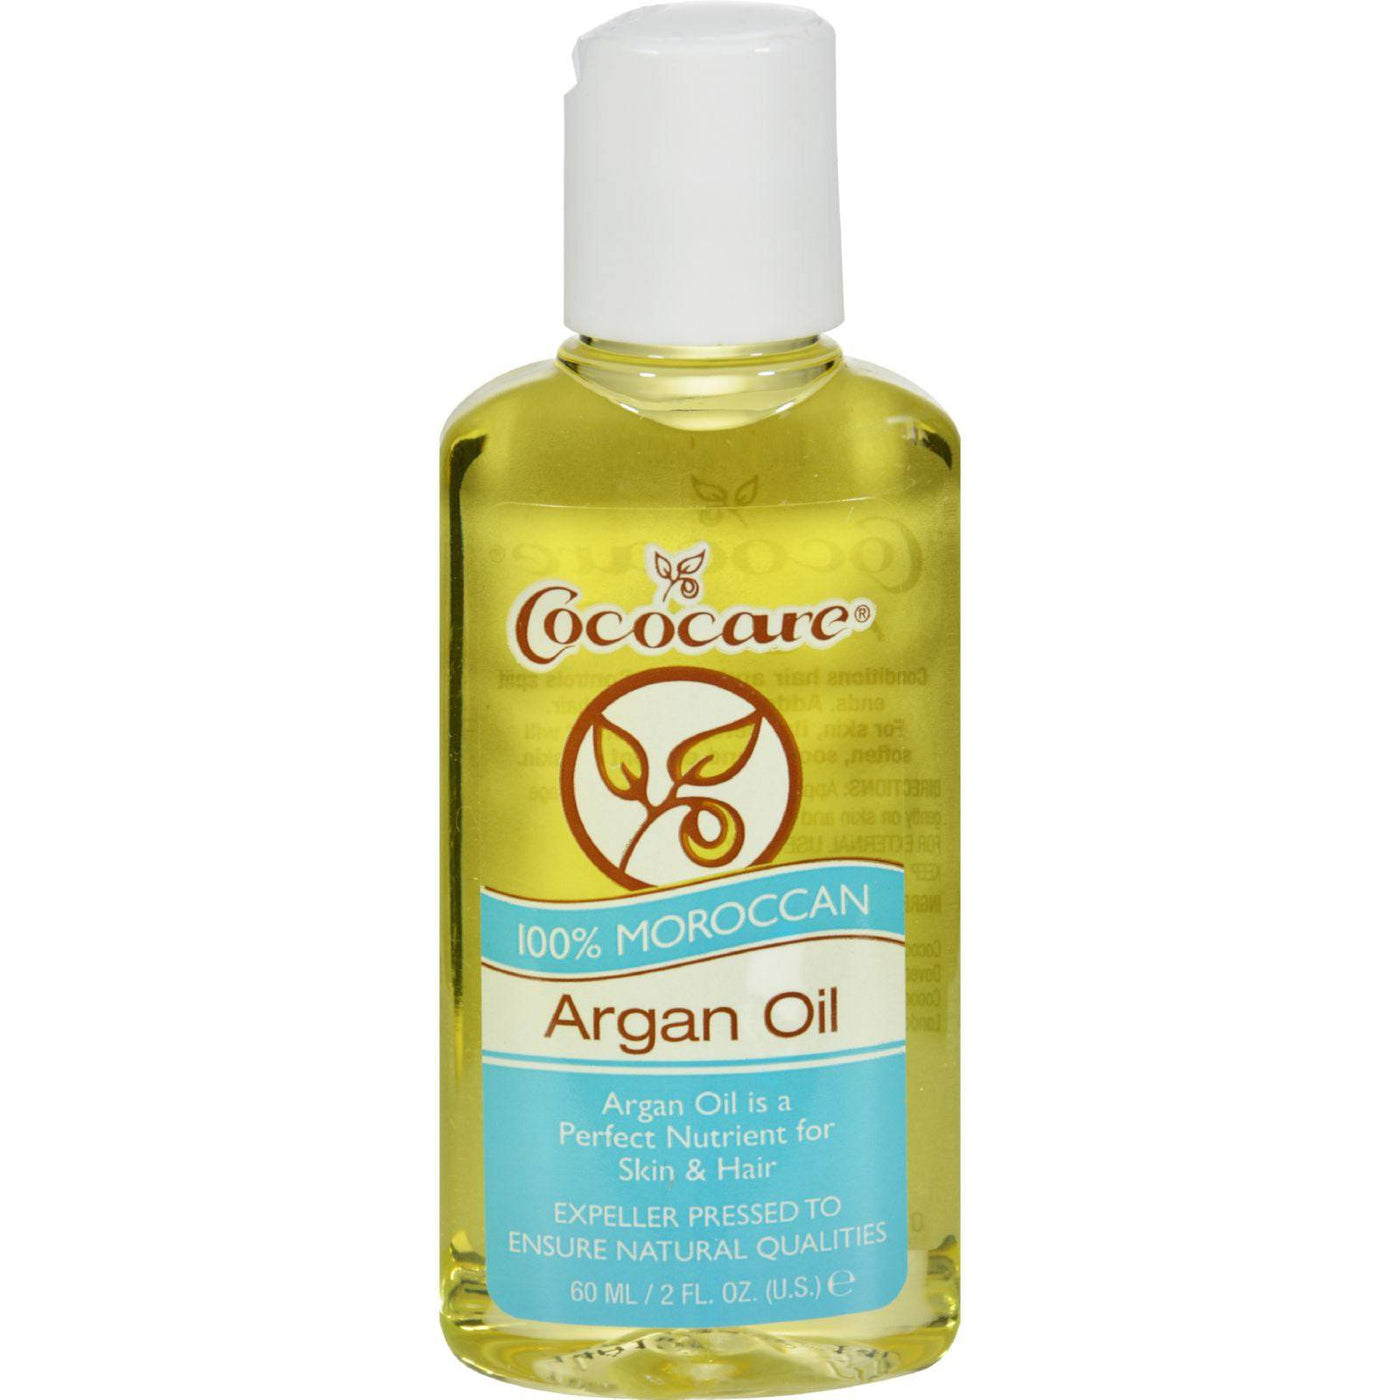 Buy Cococare Argan Oil - 100 Percent Natural - 2 Fl Oz  at OnlyNaturals.us